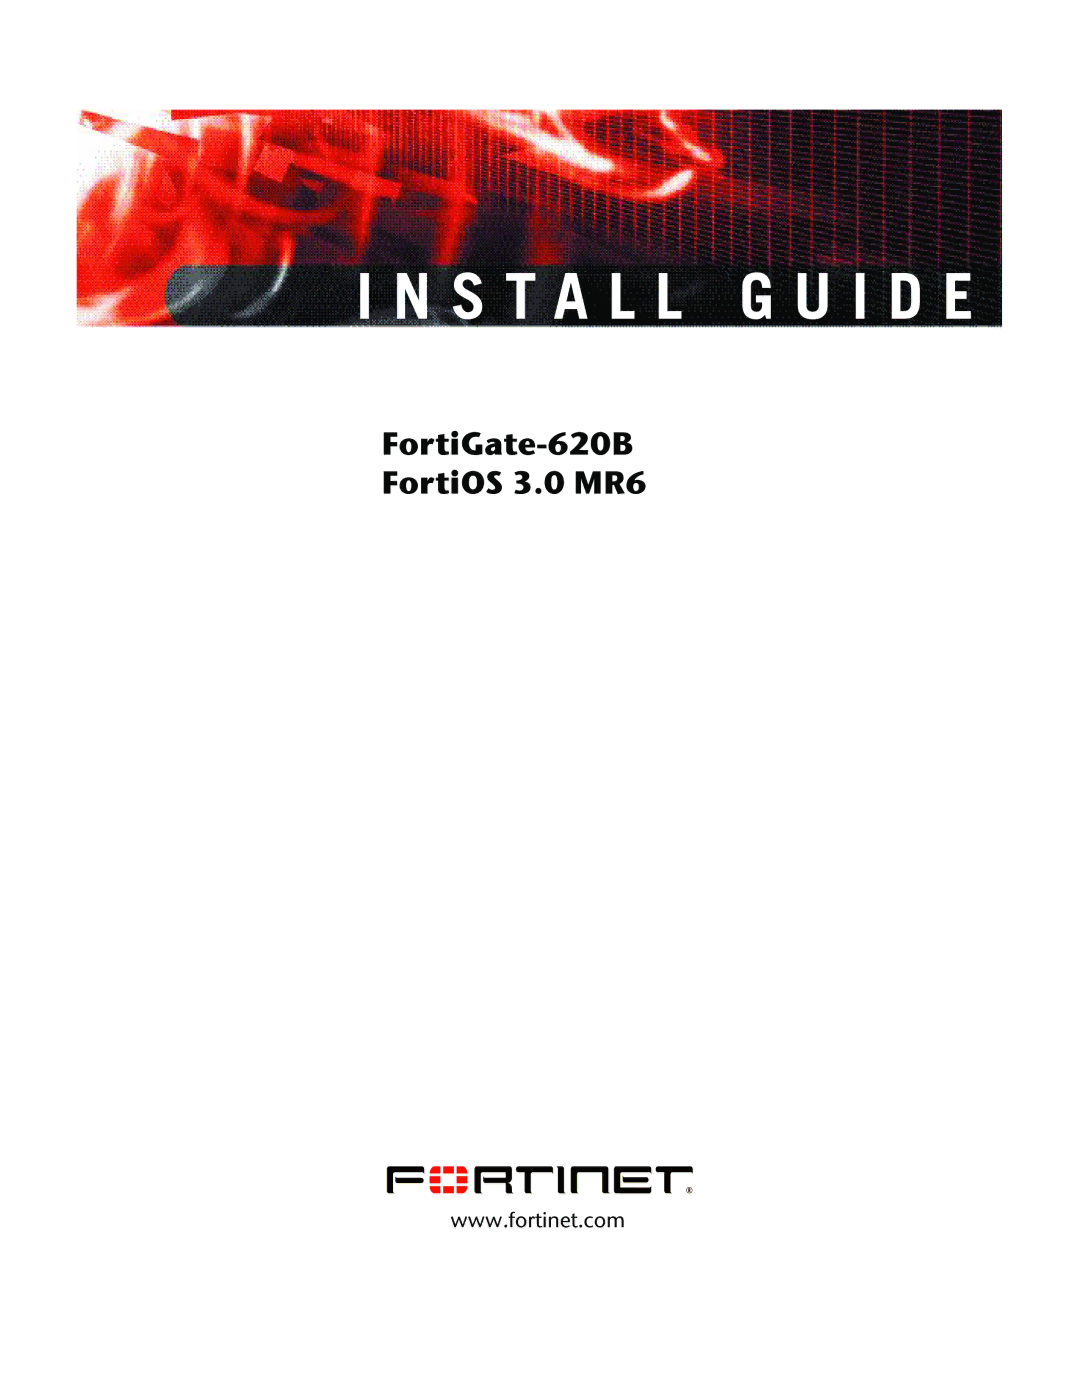 Fortinet 620B manual Install G U I D E 